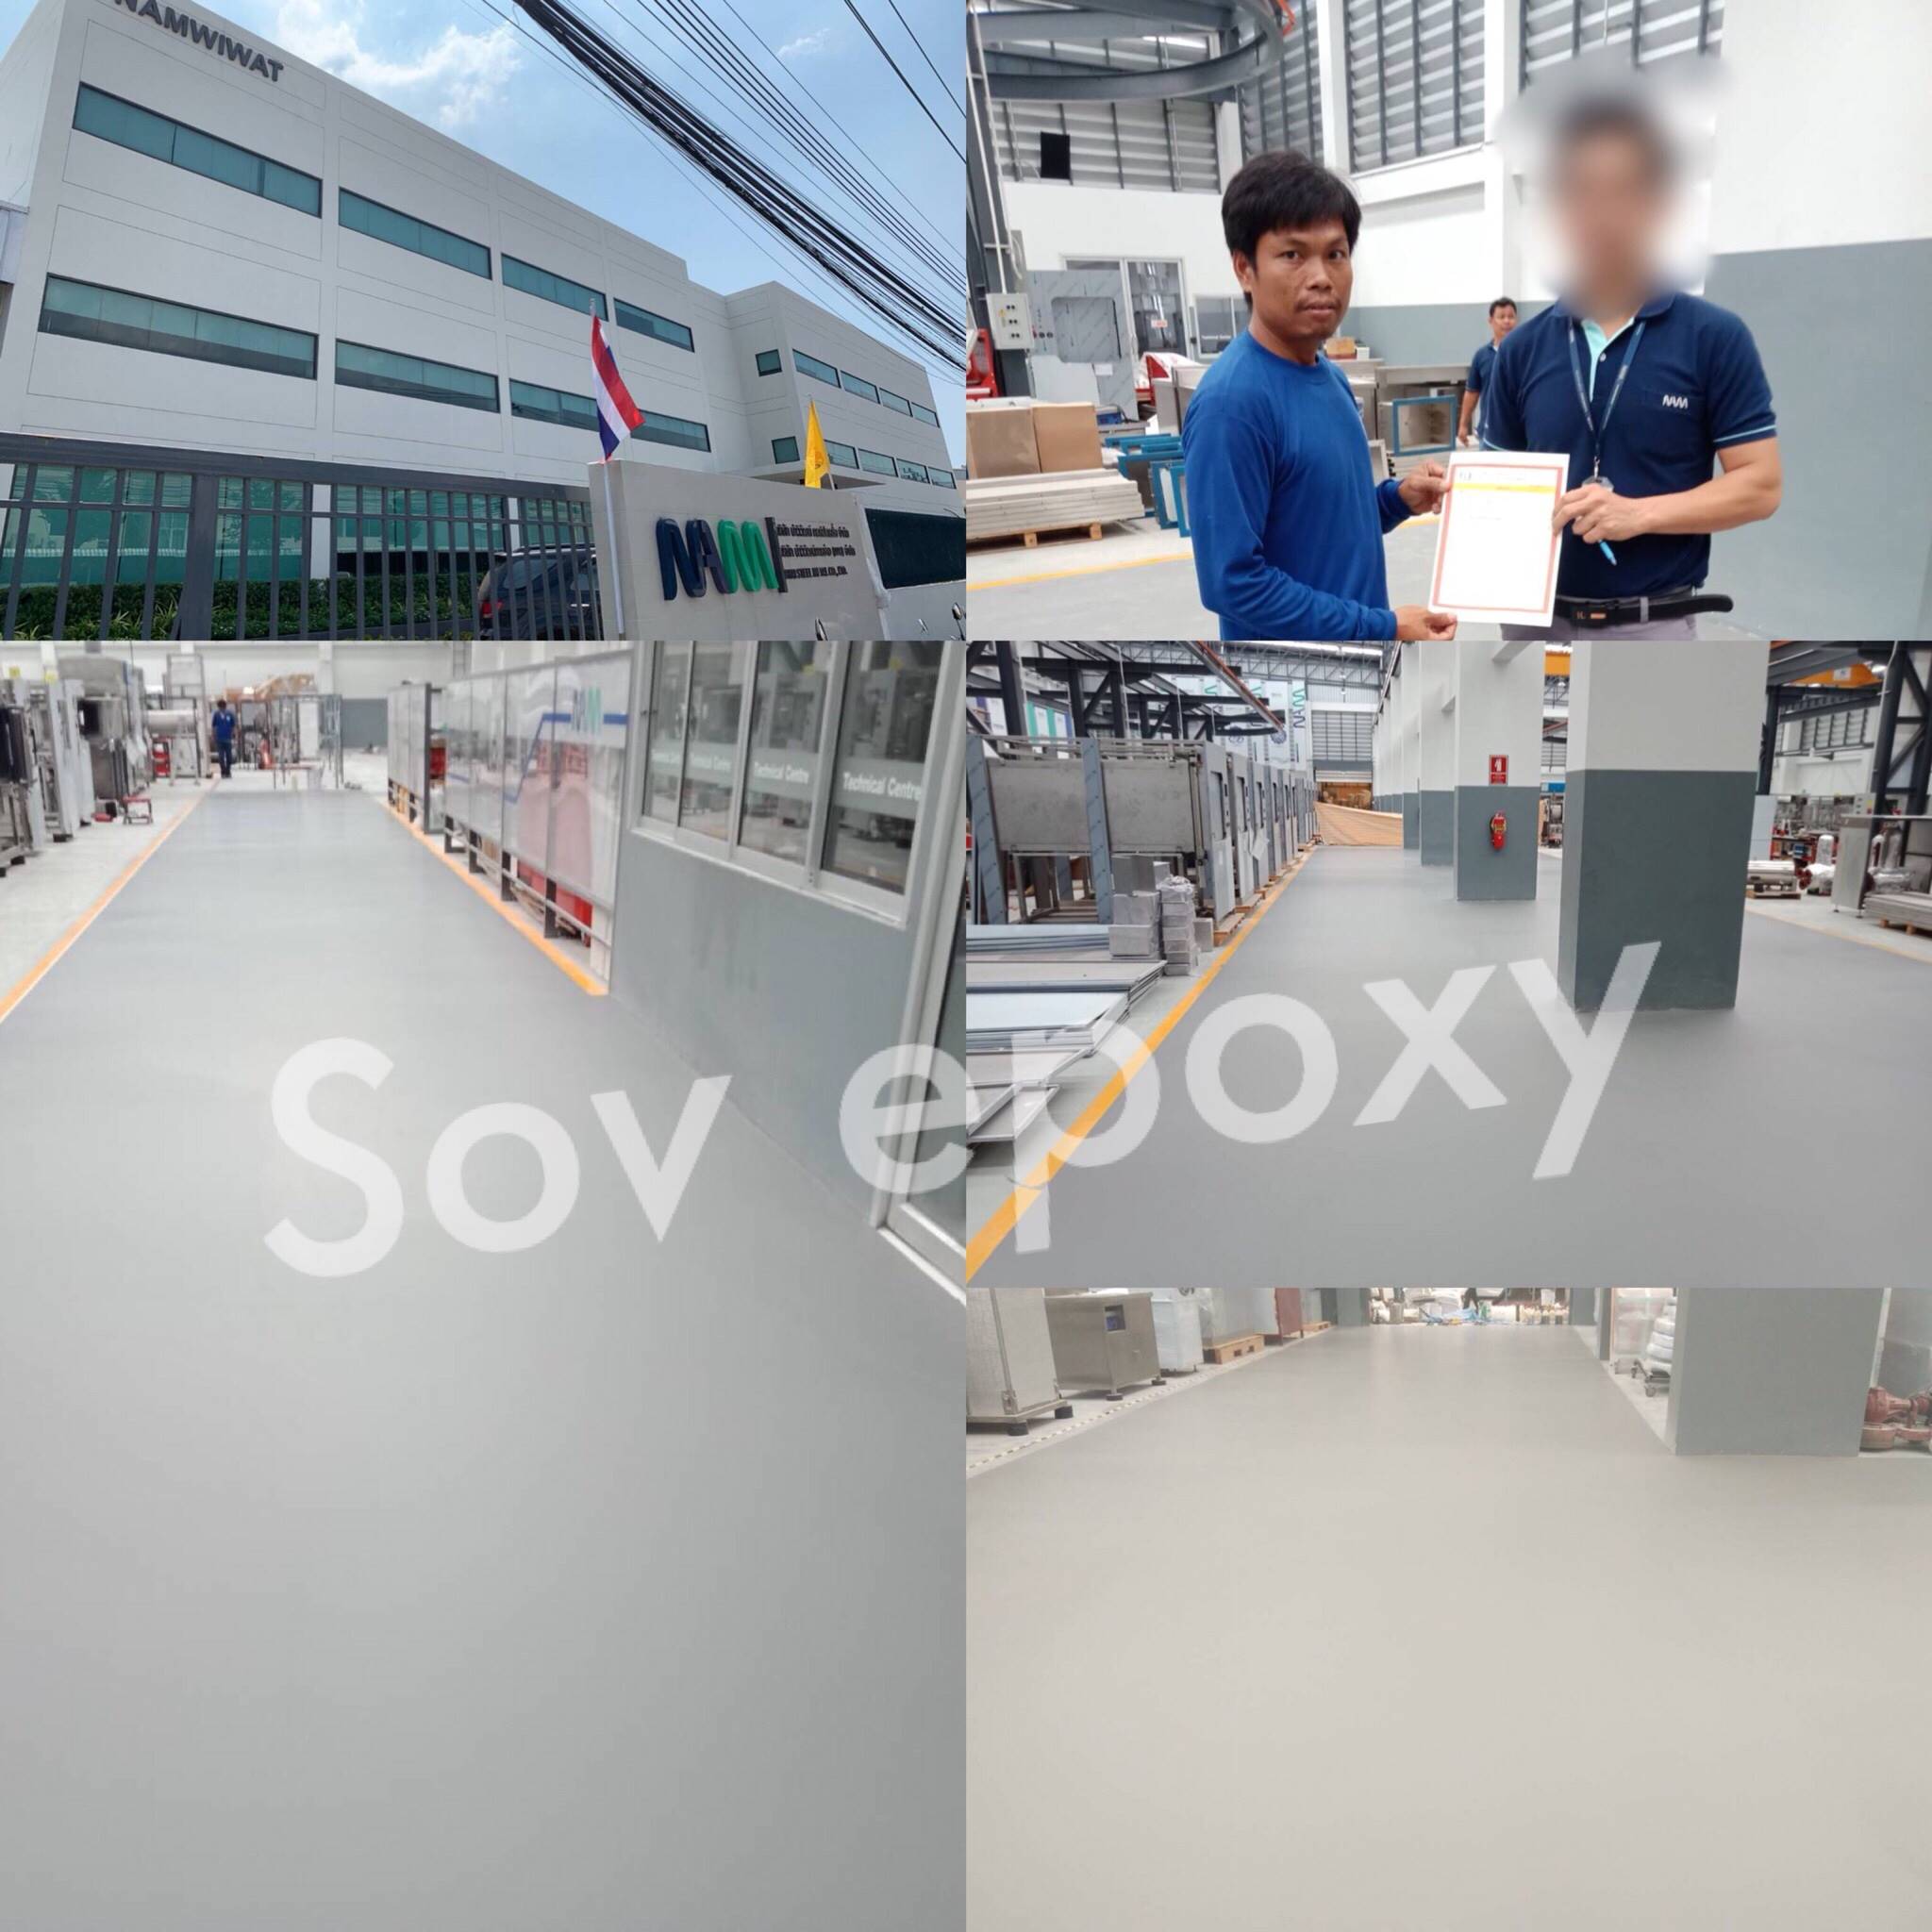 ผลงาน SOV Epoxy 251